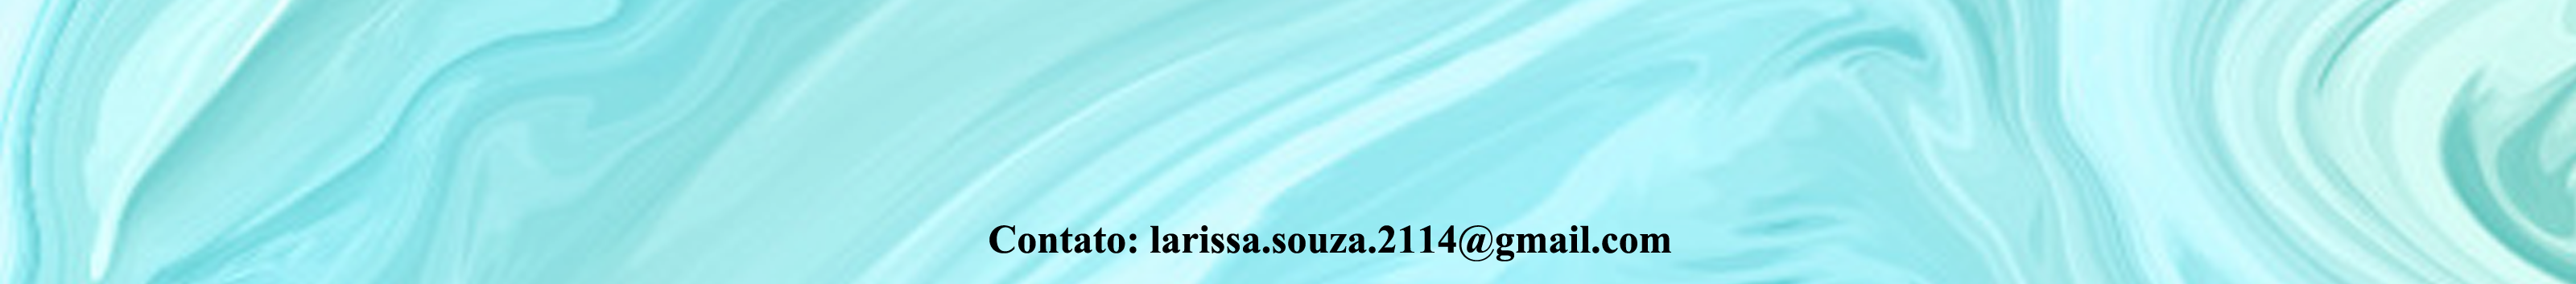 Larissa Souzas profilbanner